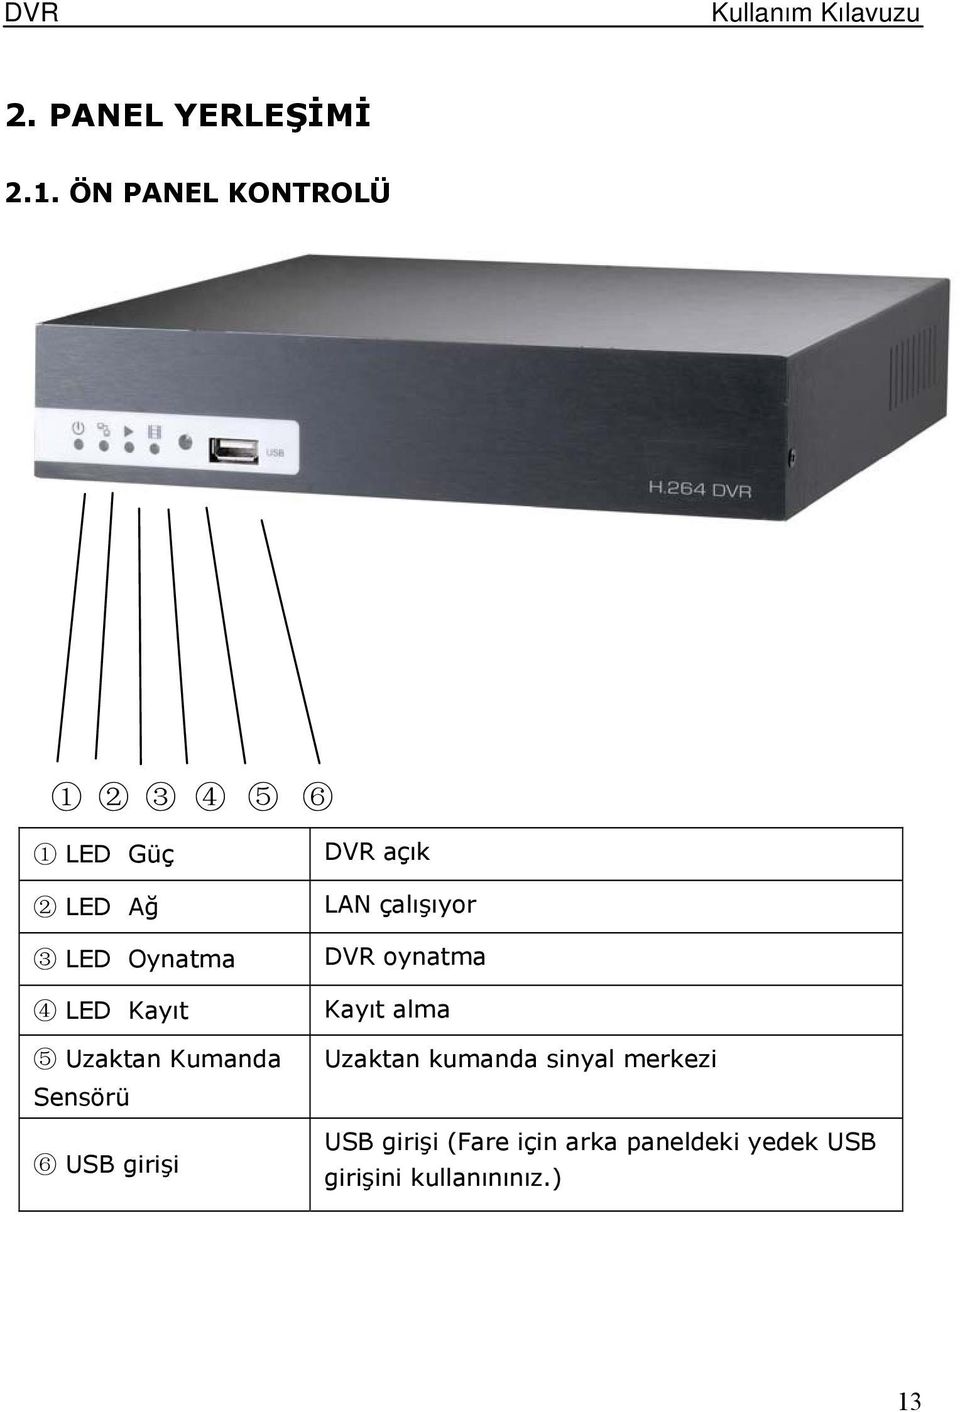 Kayıt 5 Uzaktan Kumanda Sensörü 6 USB girişi 6 DVR açık LAN çalışıyor